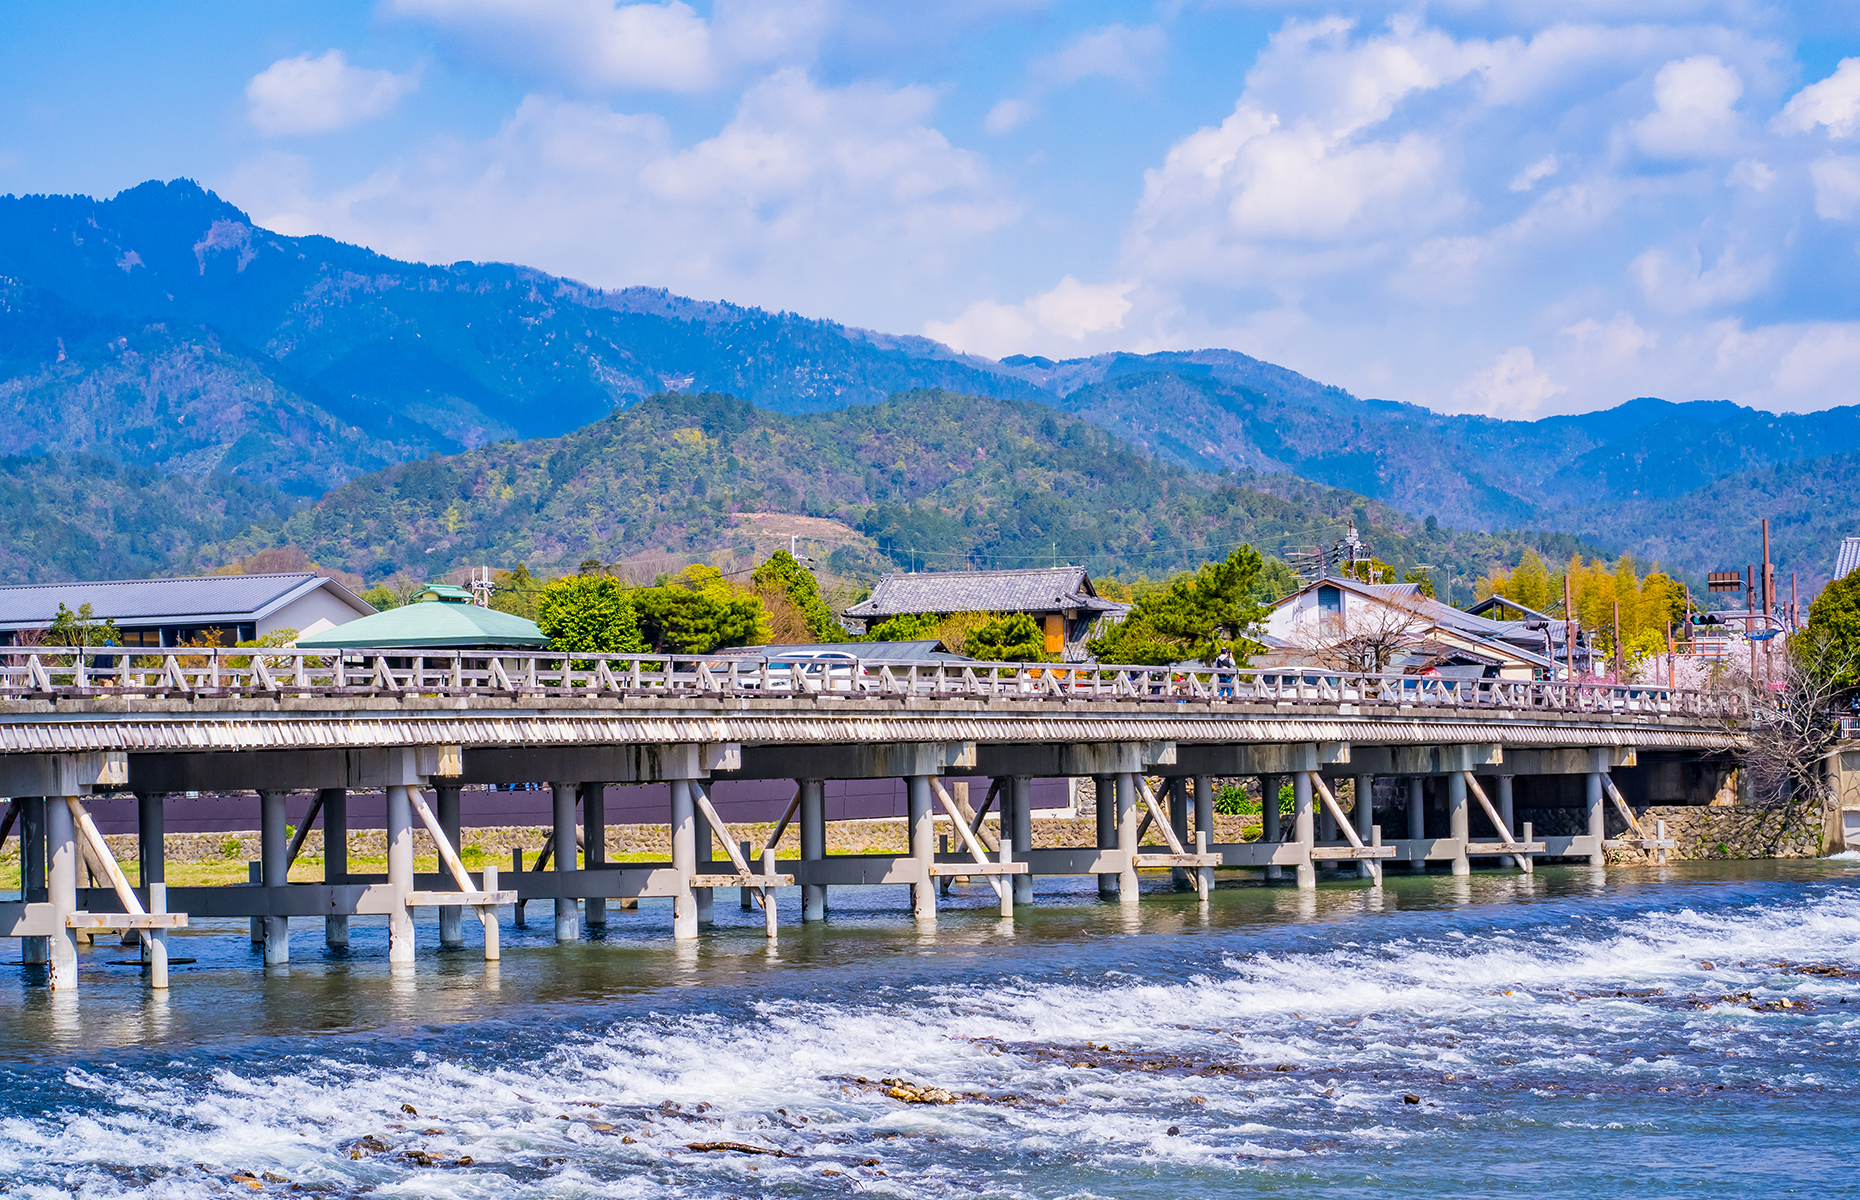 Togetsu-kyo Bridge, Kyoto, Japan. (Image: Takuya Kanzaki/Shutterstock)